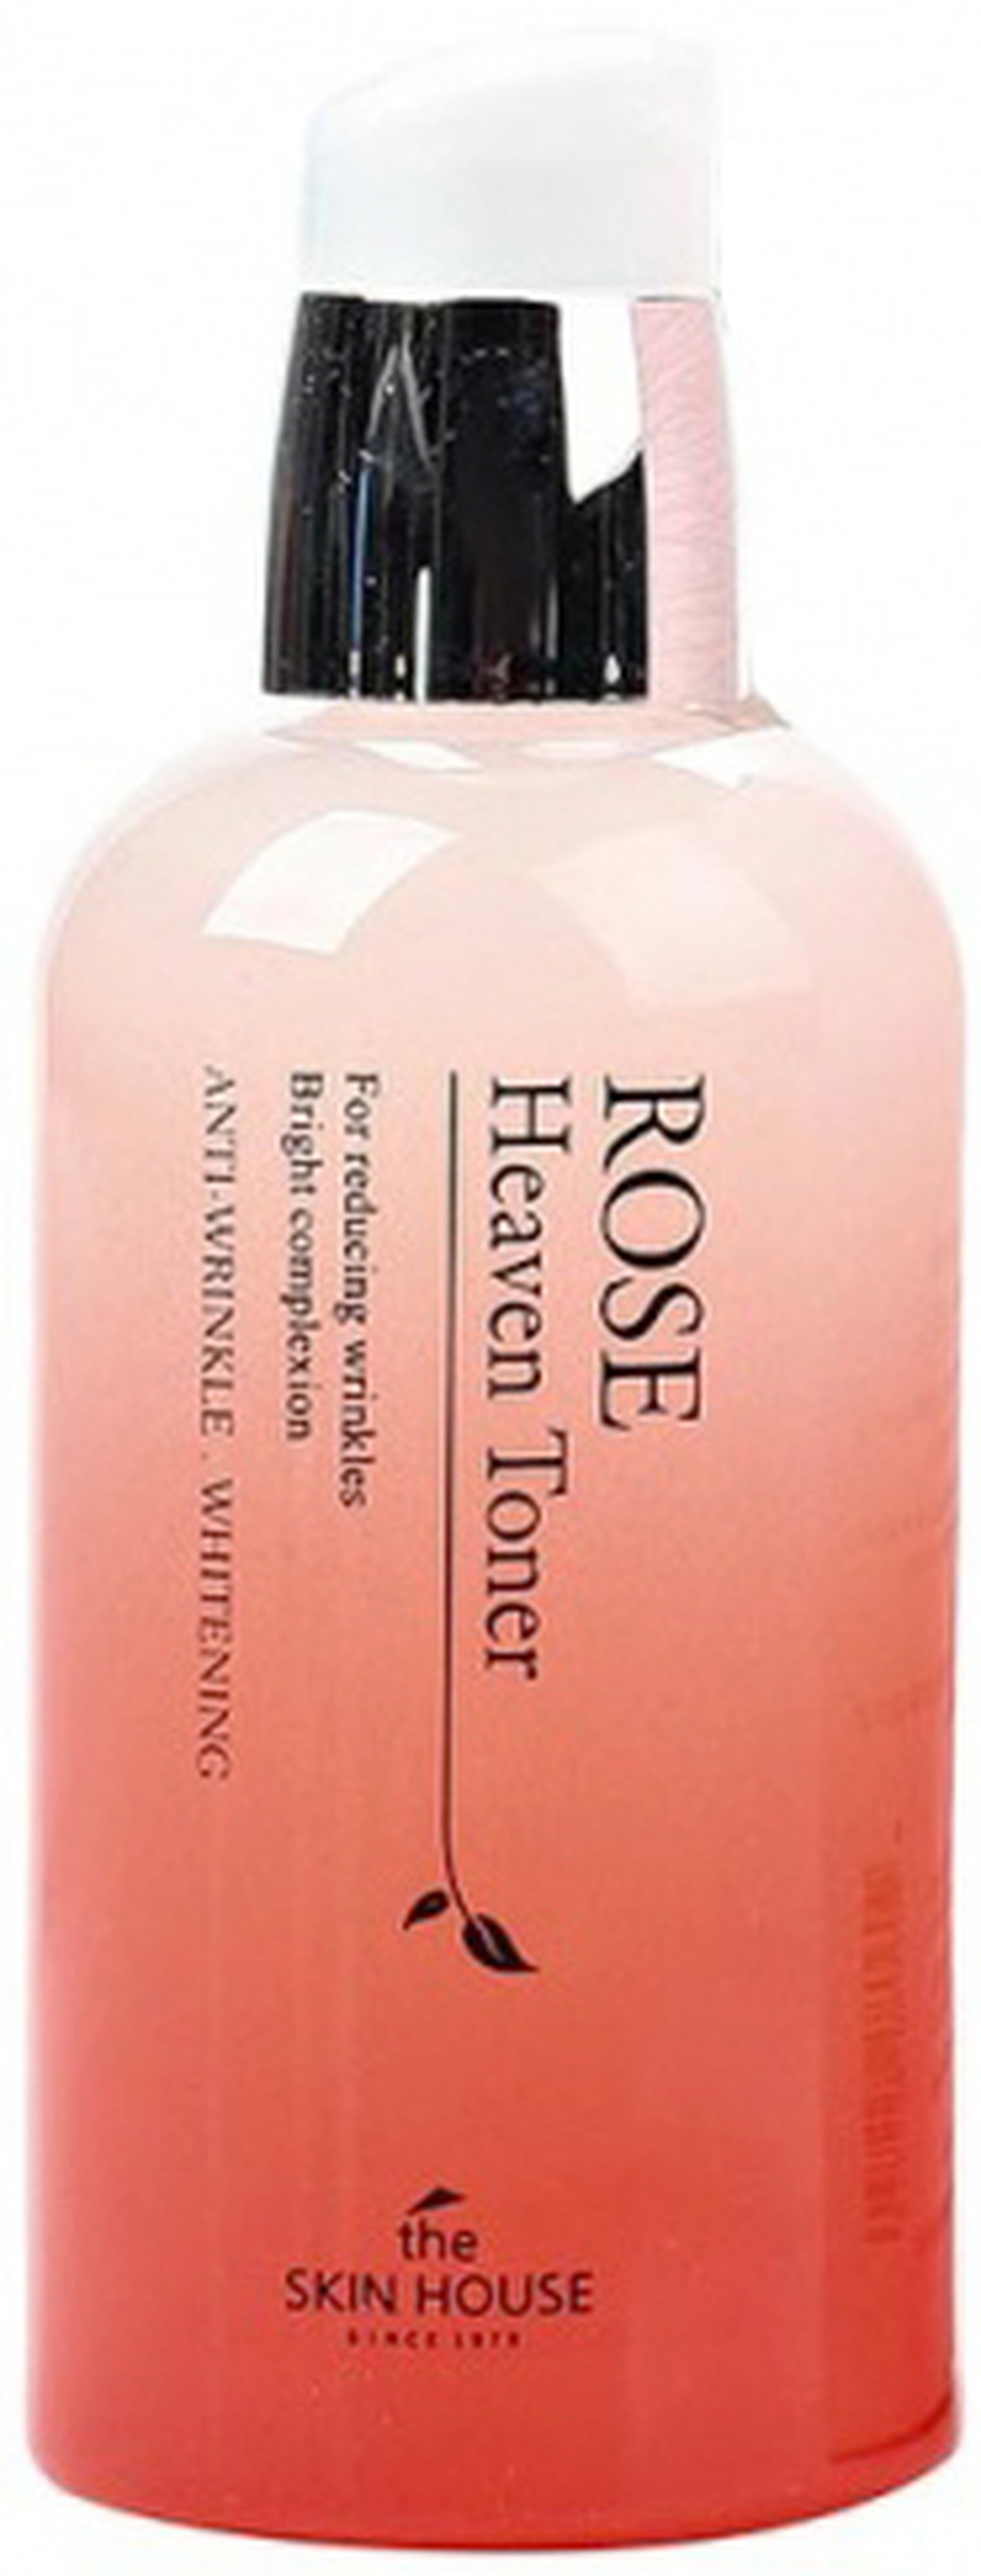 SKIN HOUSE "Rose Heaven" Тоник для кожи лица, с экстрактом розы и маслом шиповника, 130 мл фото